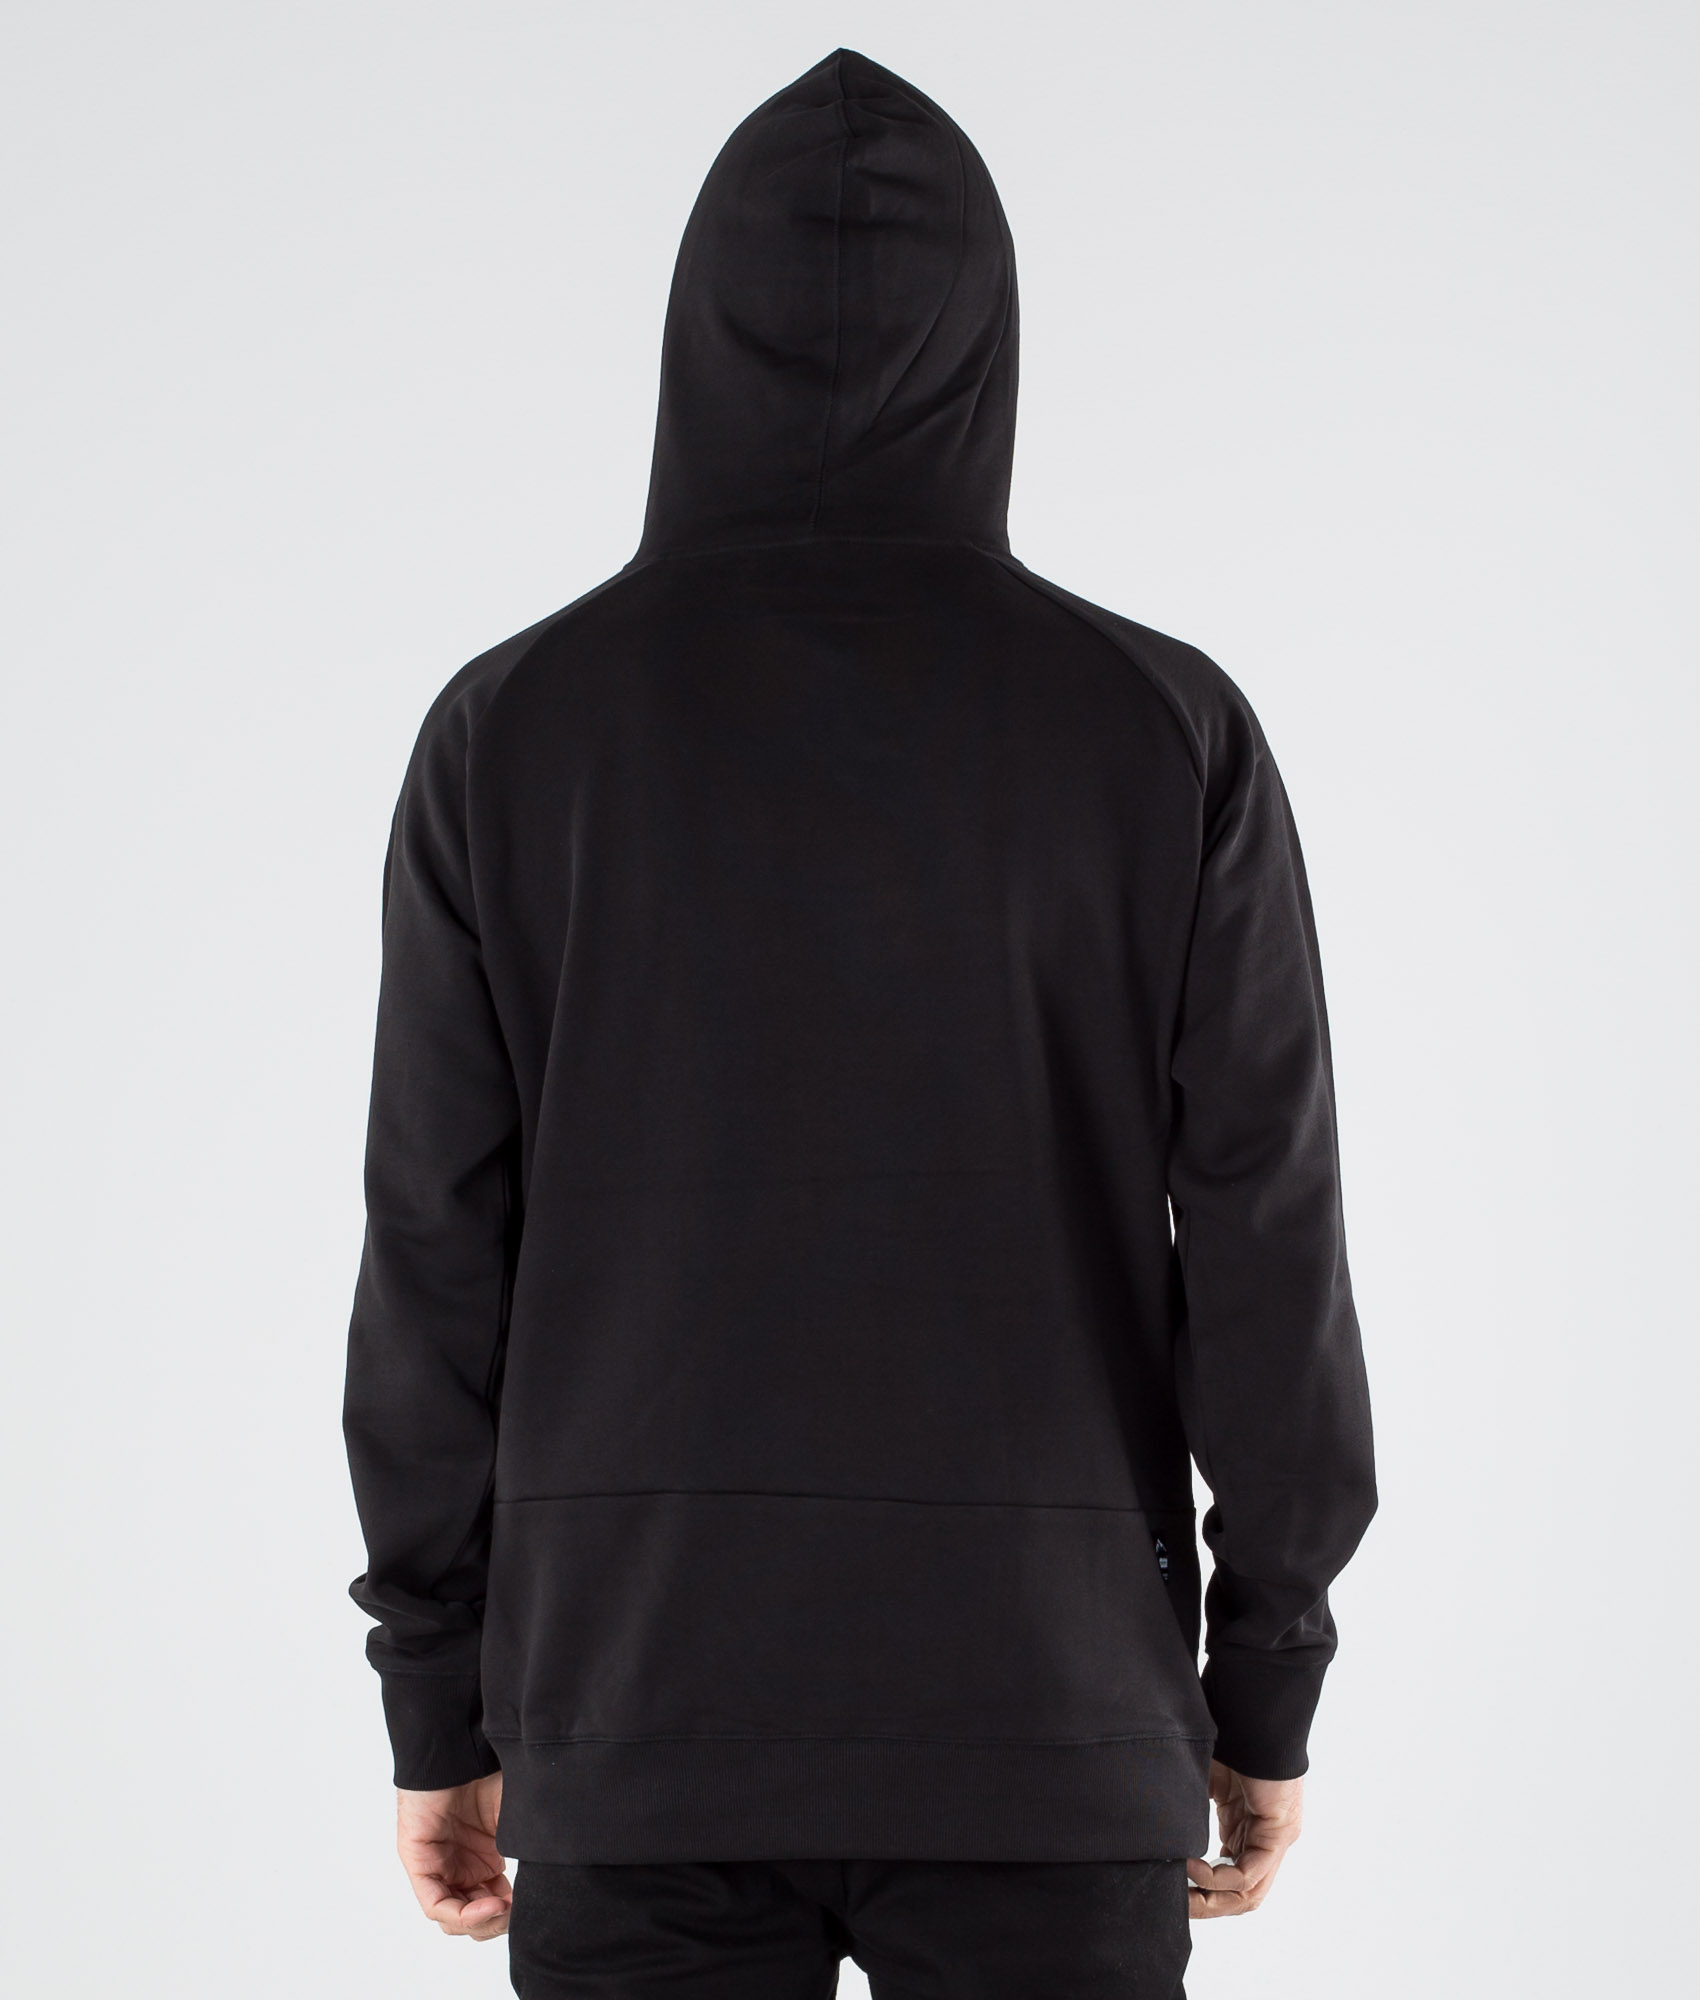 hoodie black plain